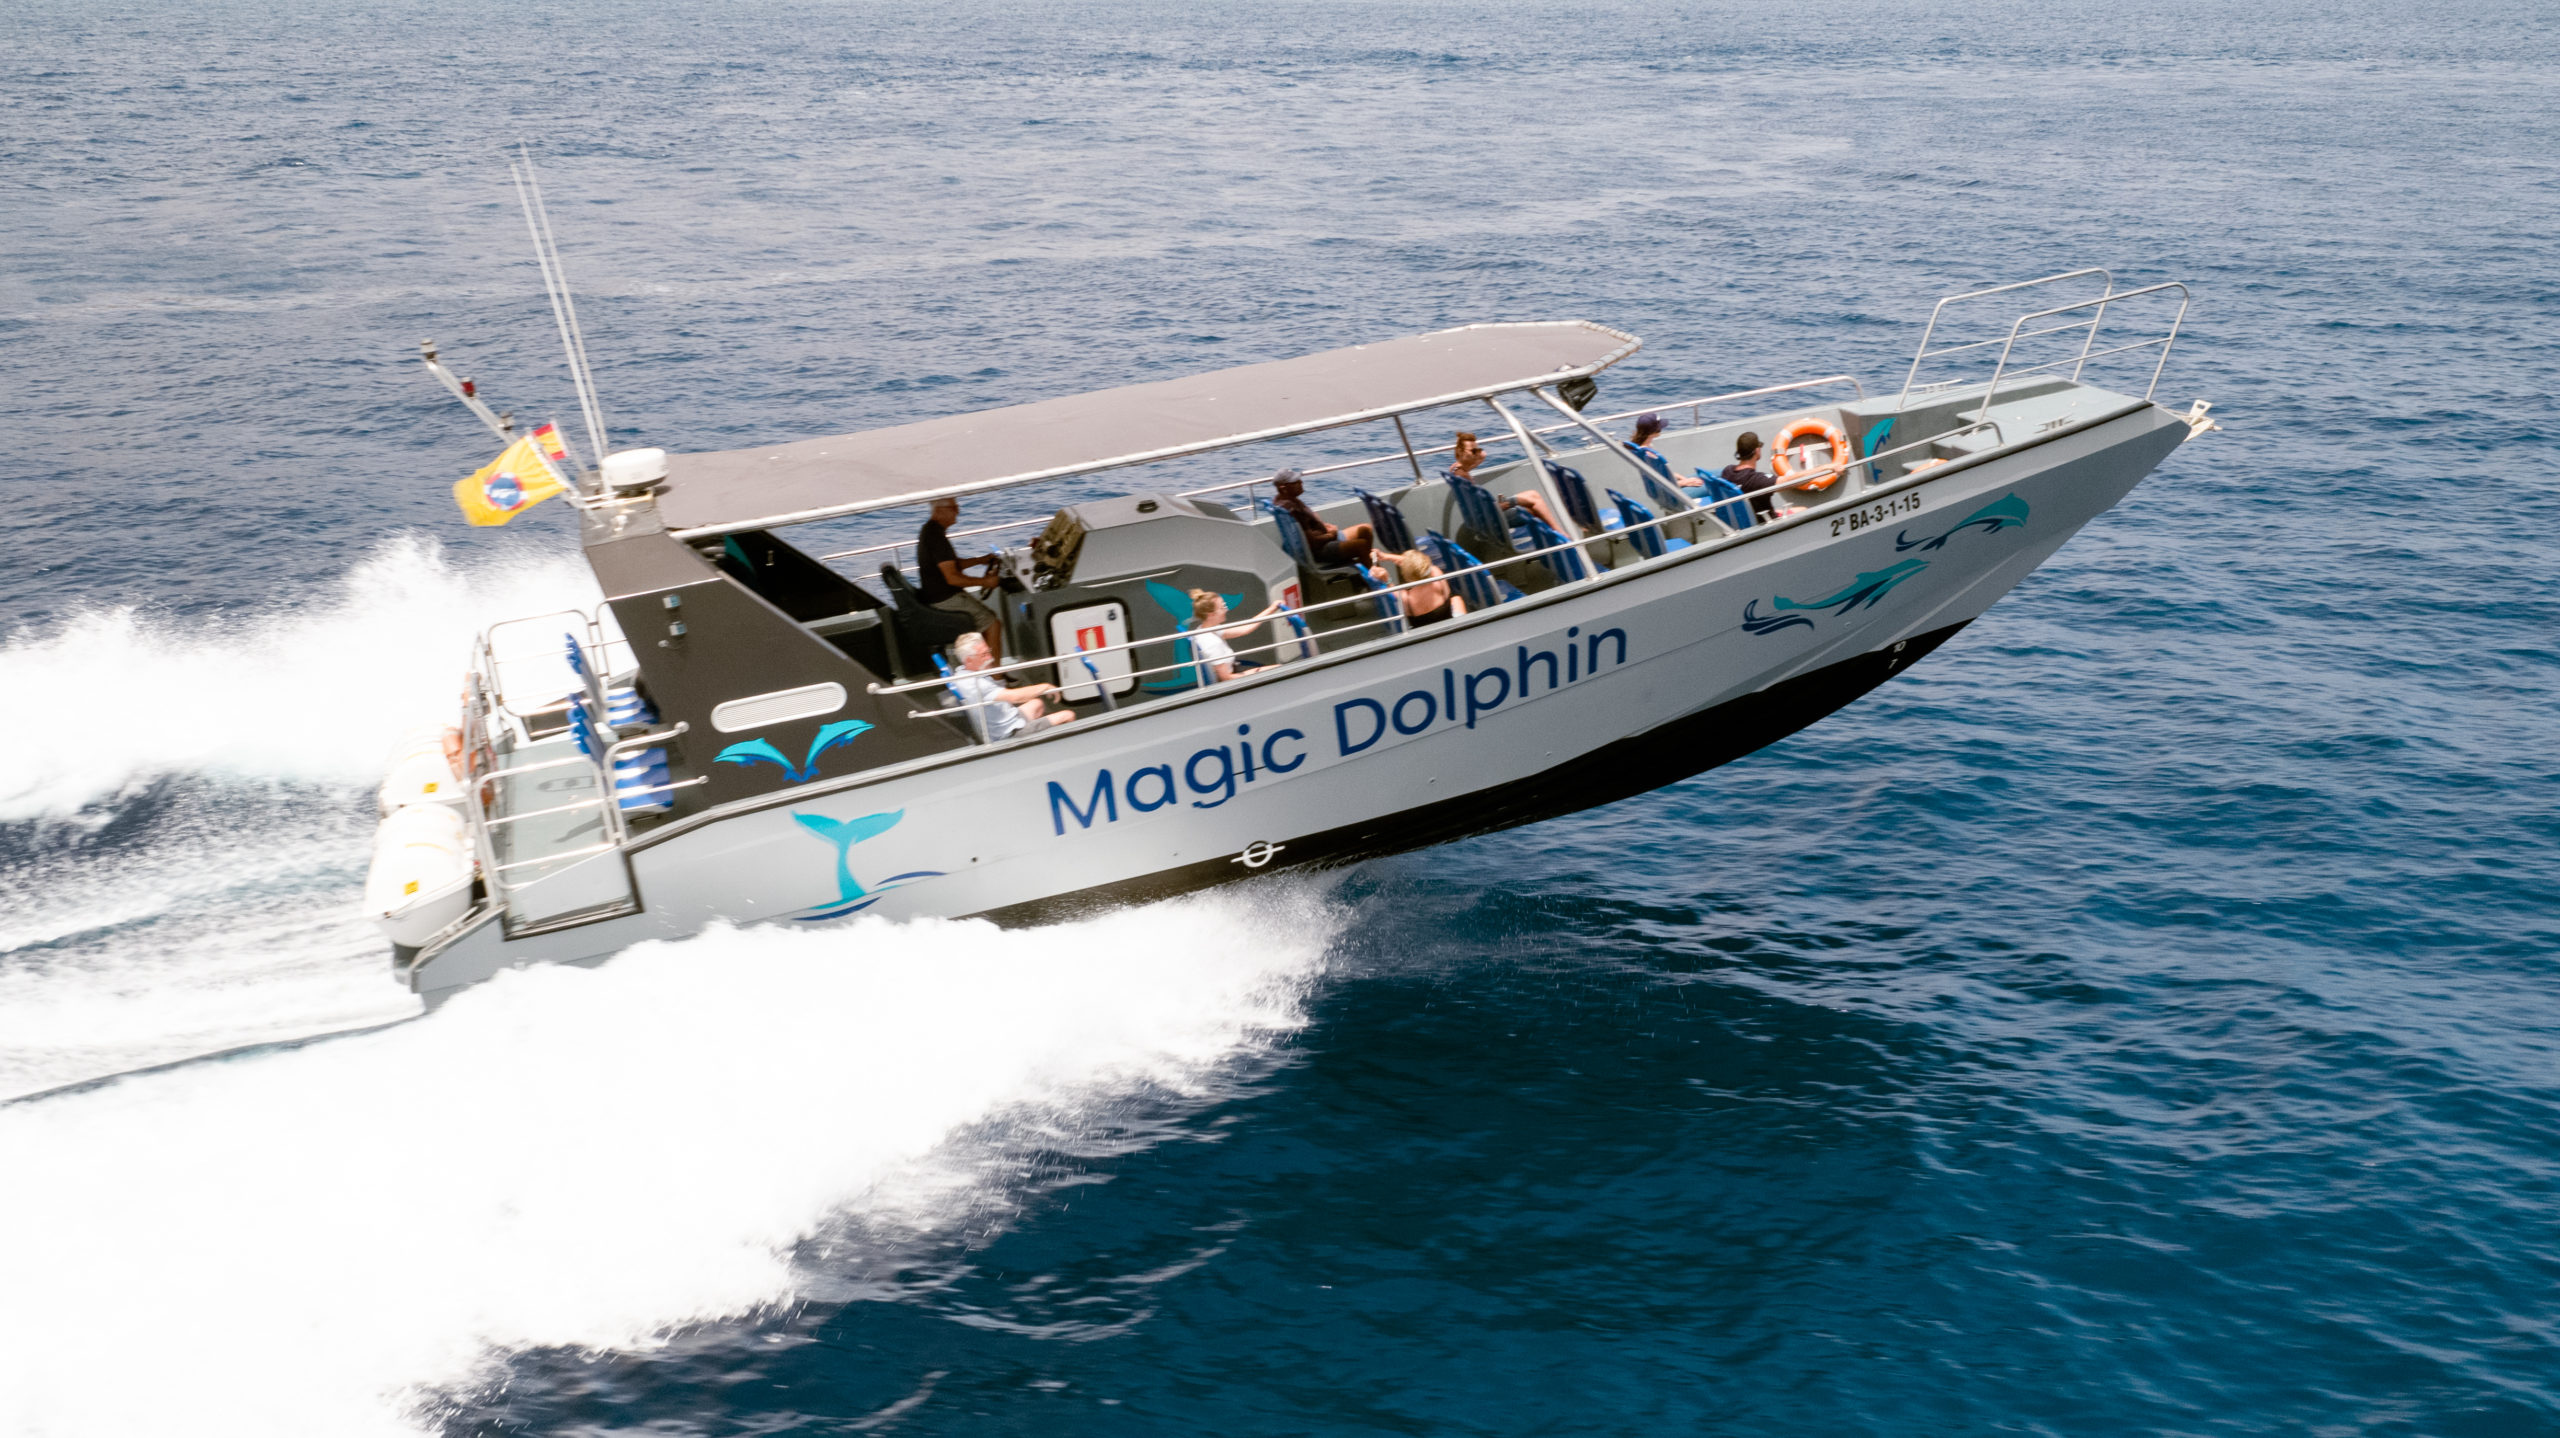 magic dolphin tour